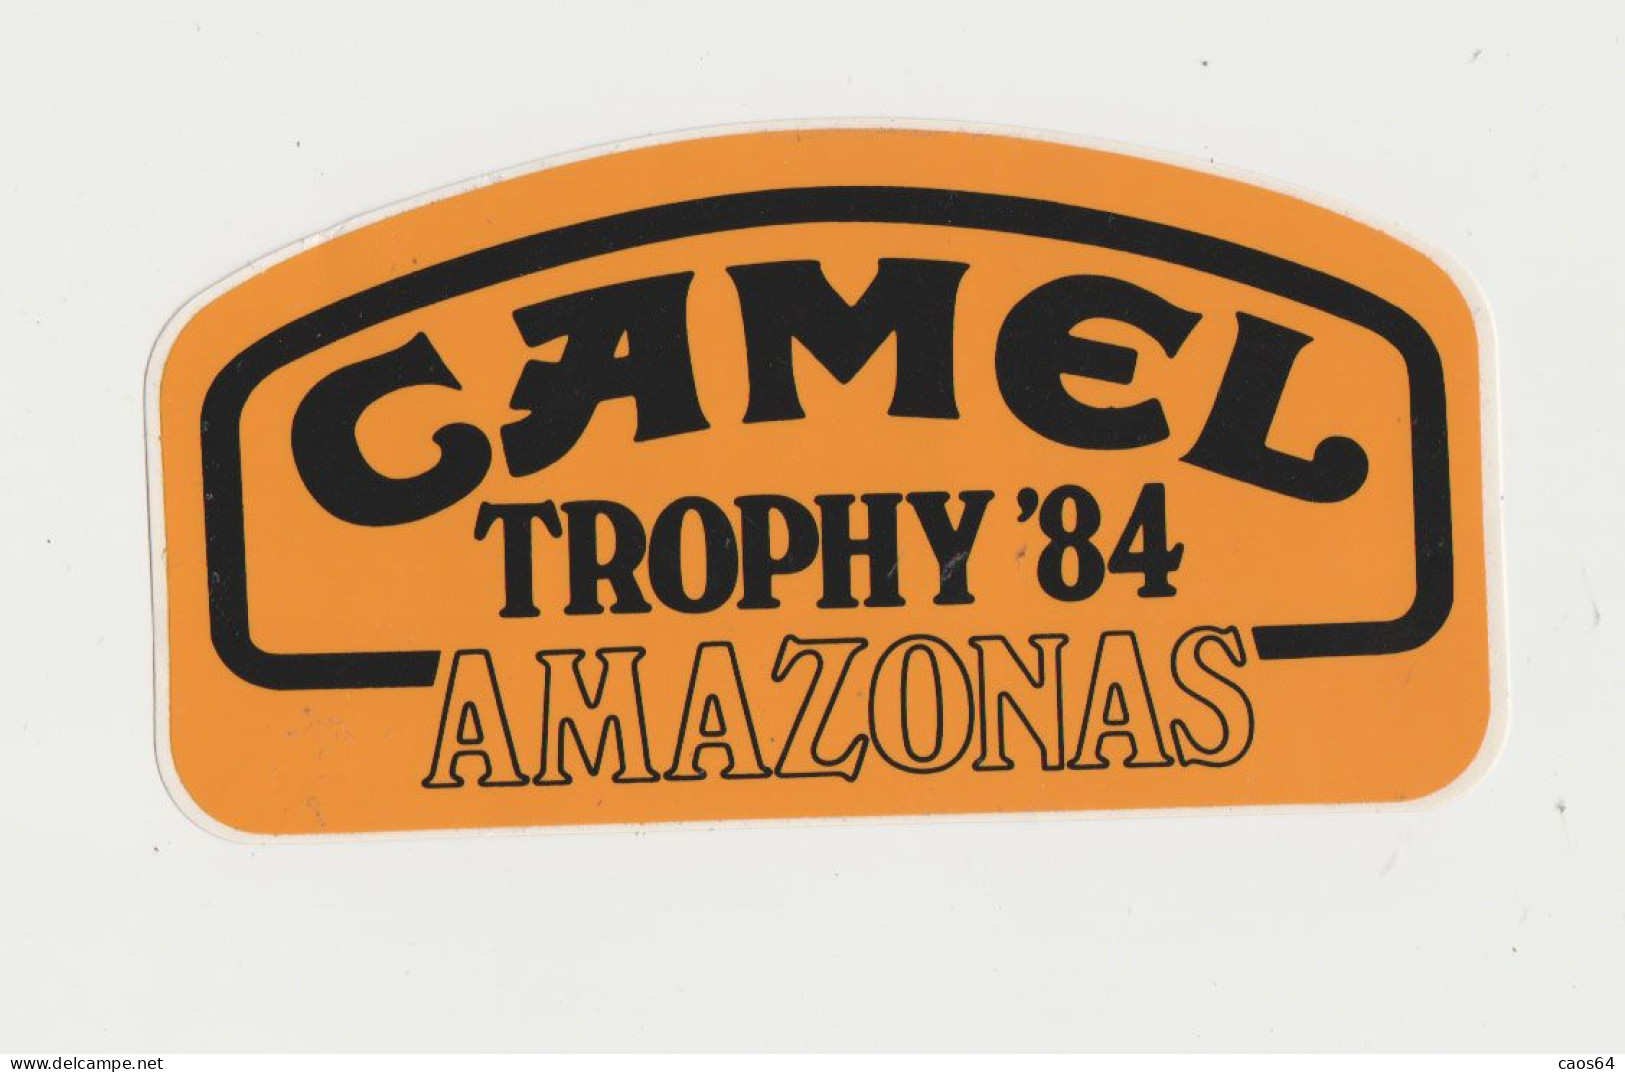 Camel Trophy '84 Amazonas  16 X 8 Cm  ADESIVO STICKER  NEW ORIGINAL - Stickers